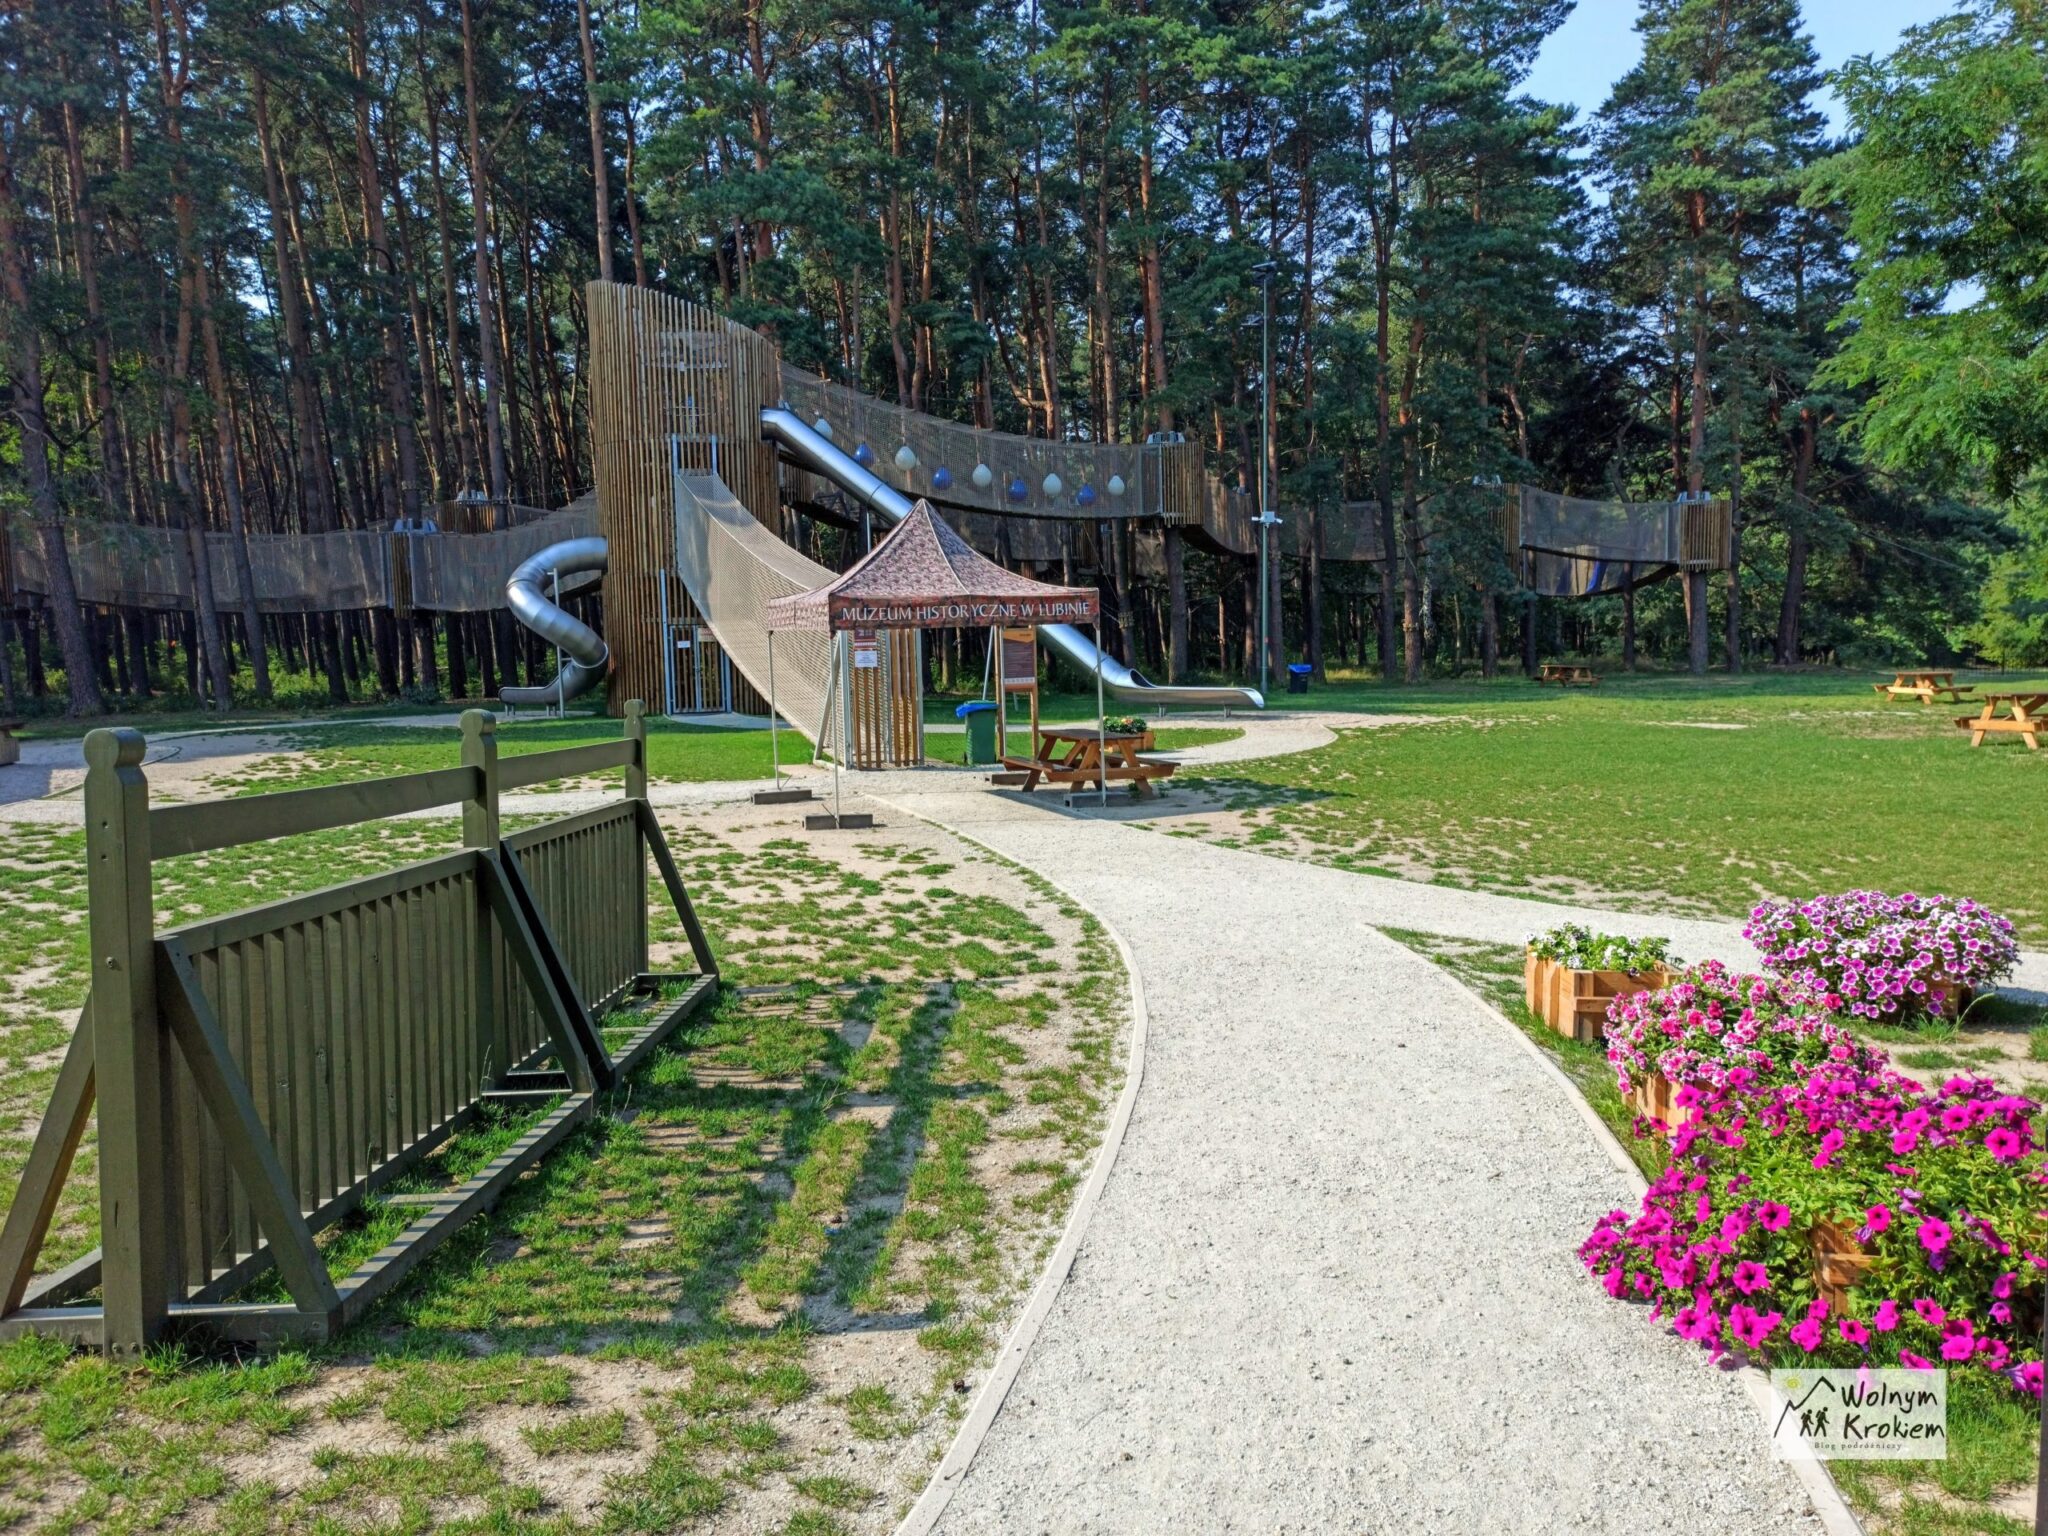 Park Leśny w Lubinie - darmowy park linowy, muzeum historii i dawna strzelnica artylerii